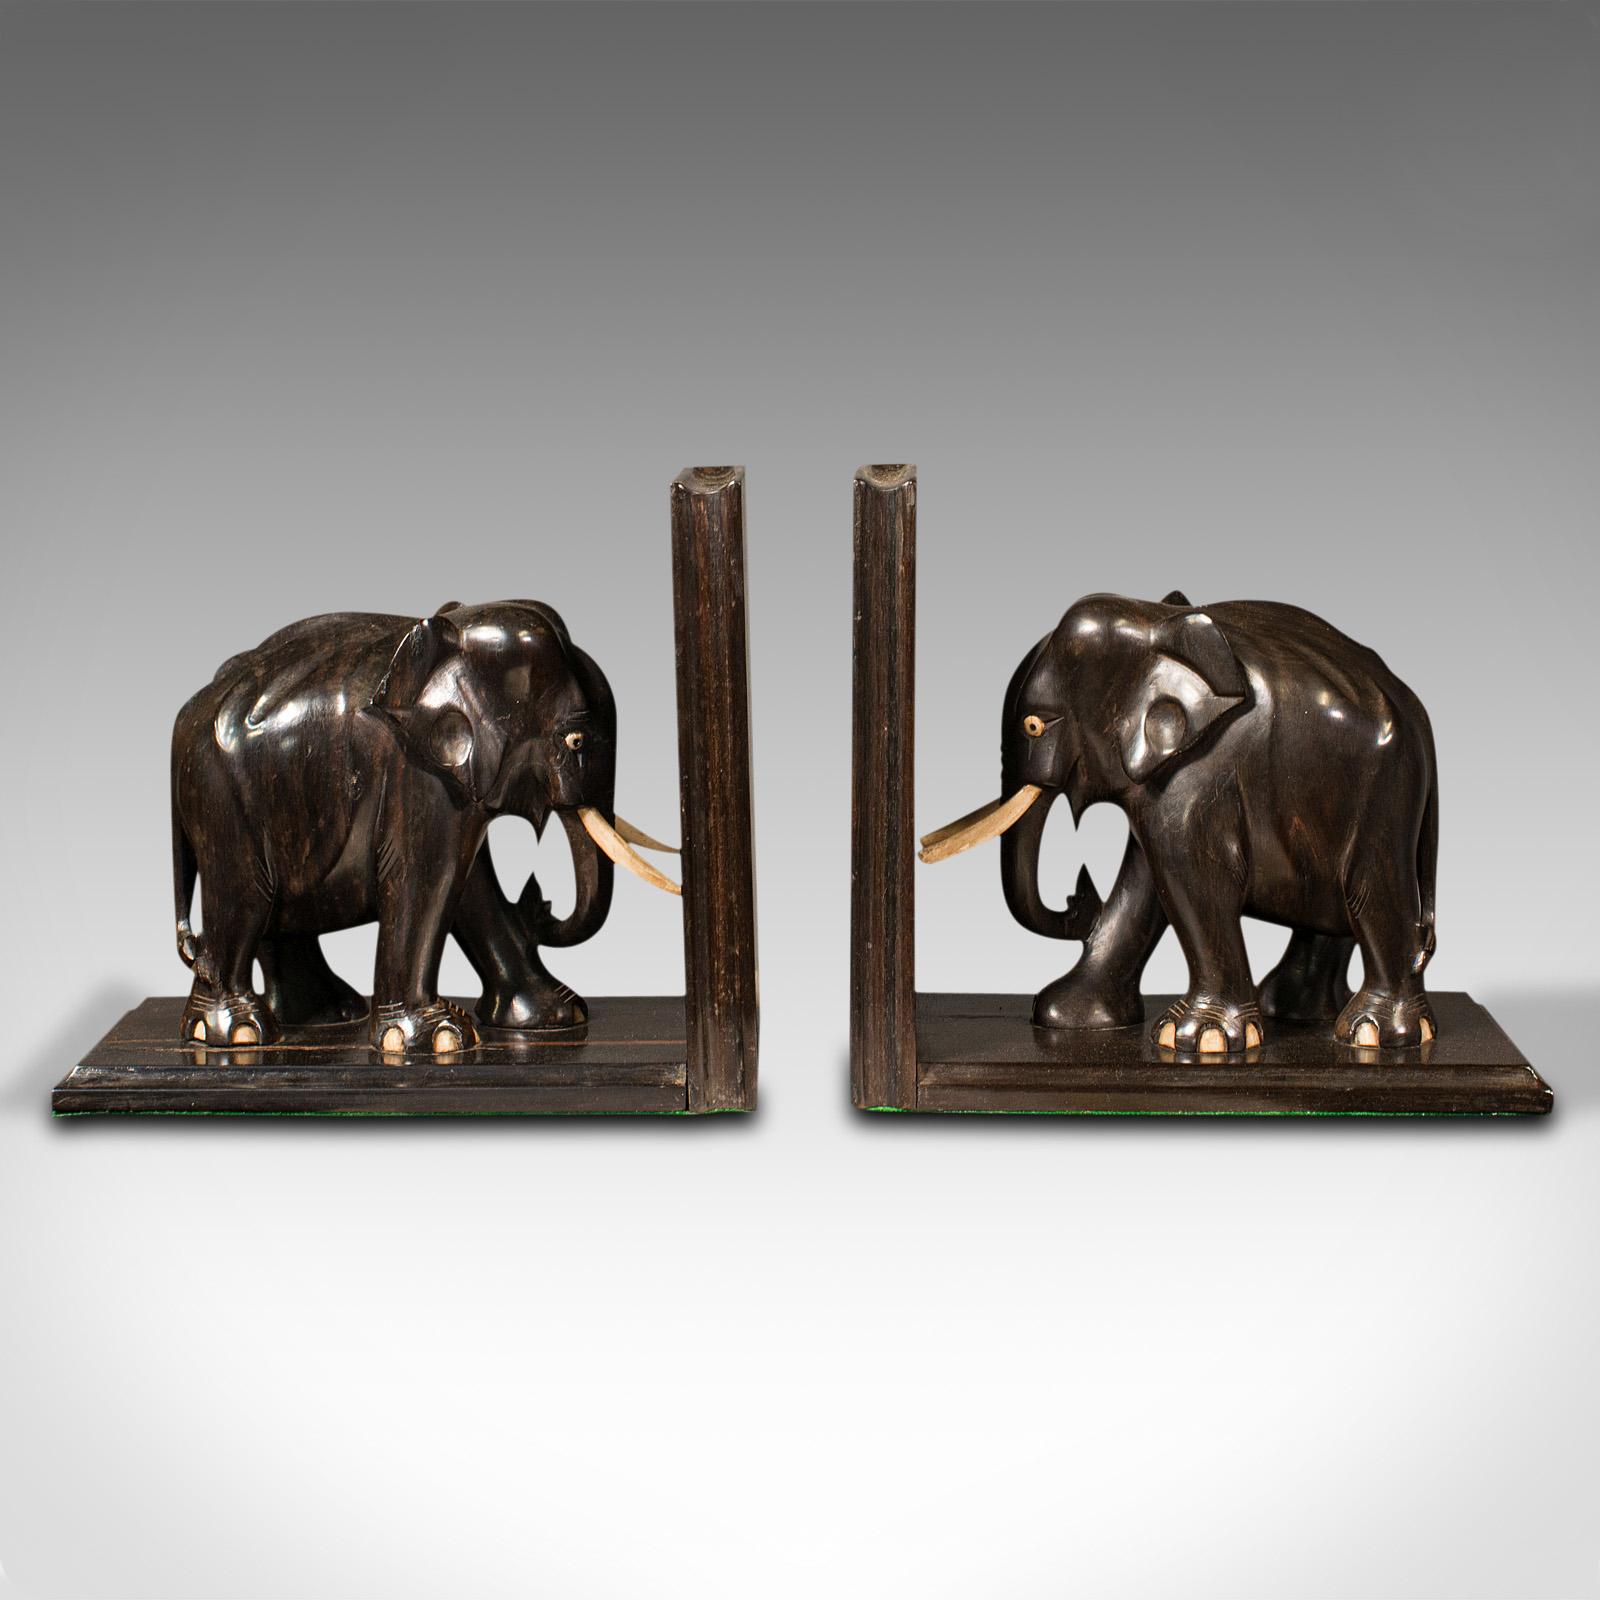 Il s'agit d'une paire de serre-livres anciens en forme d'éléphant. Un porte-livre ou roman décoratif anglo-indien en ébène et en os, datant de la fin de la période victorienne, vers 1890.

Offrant un excellent caractère et un attrait d'affichage